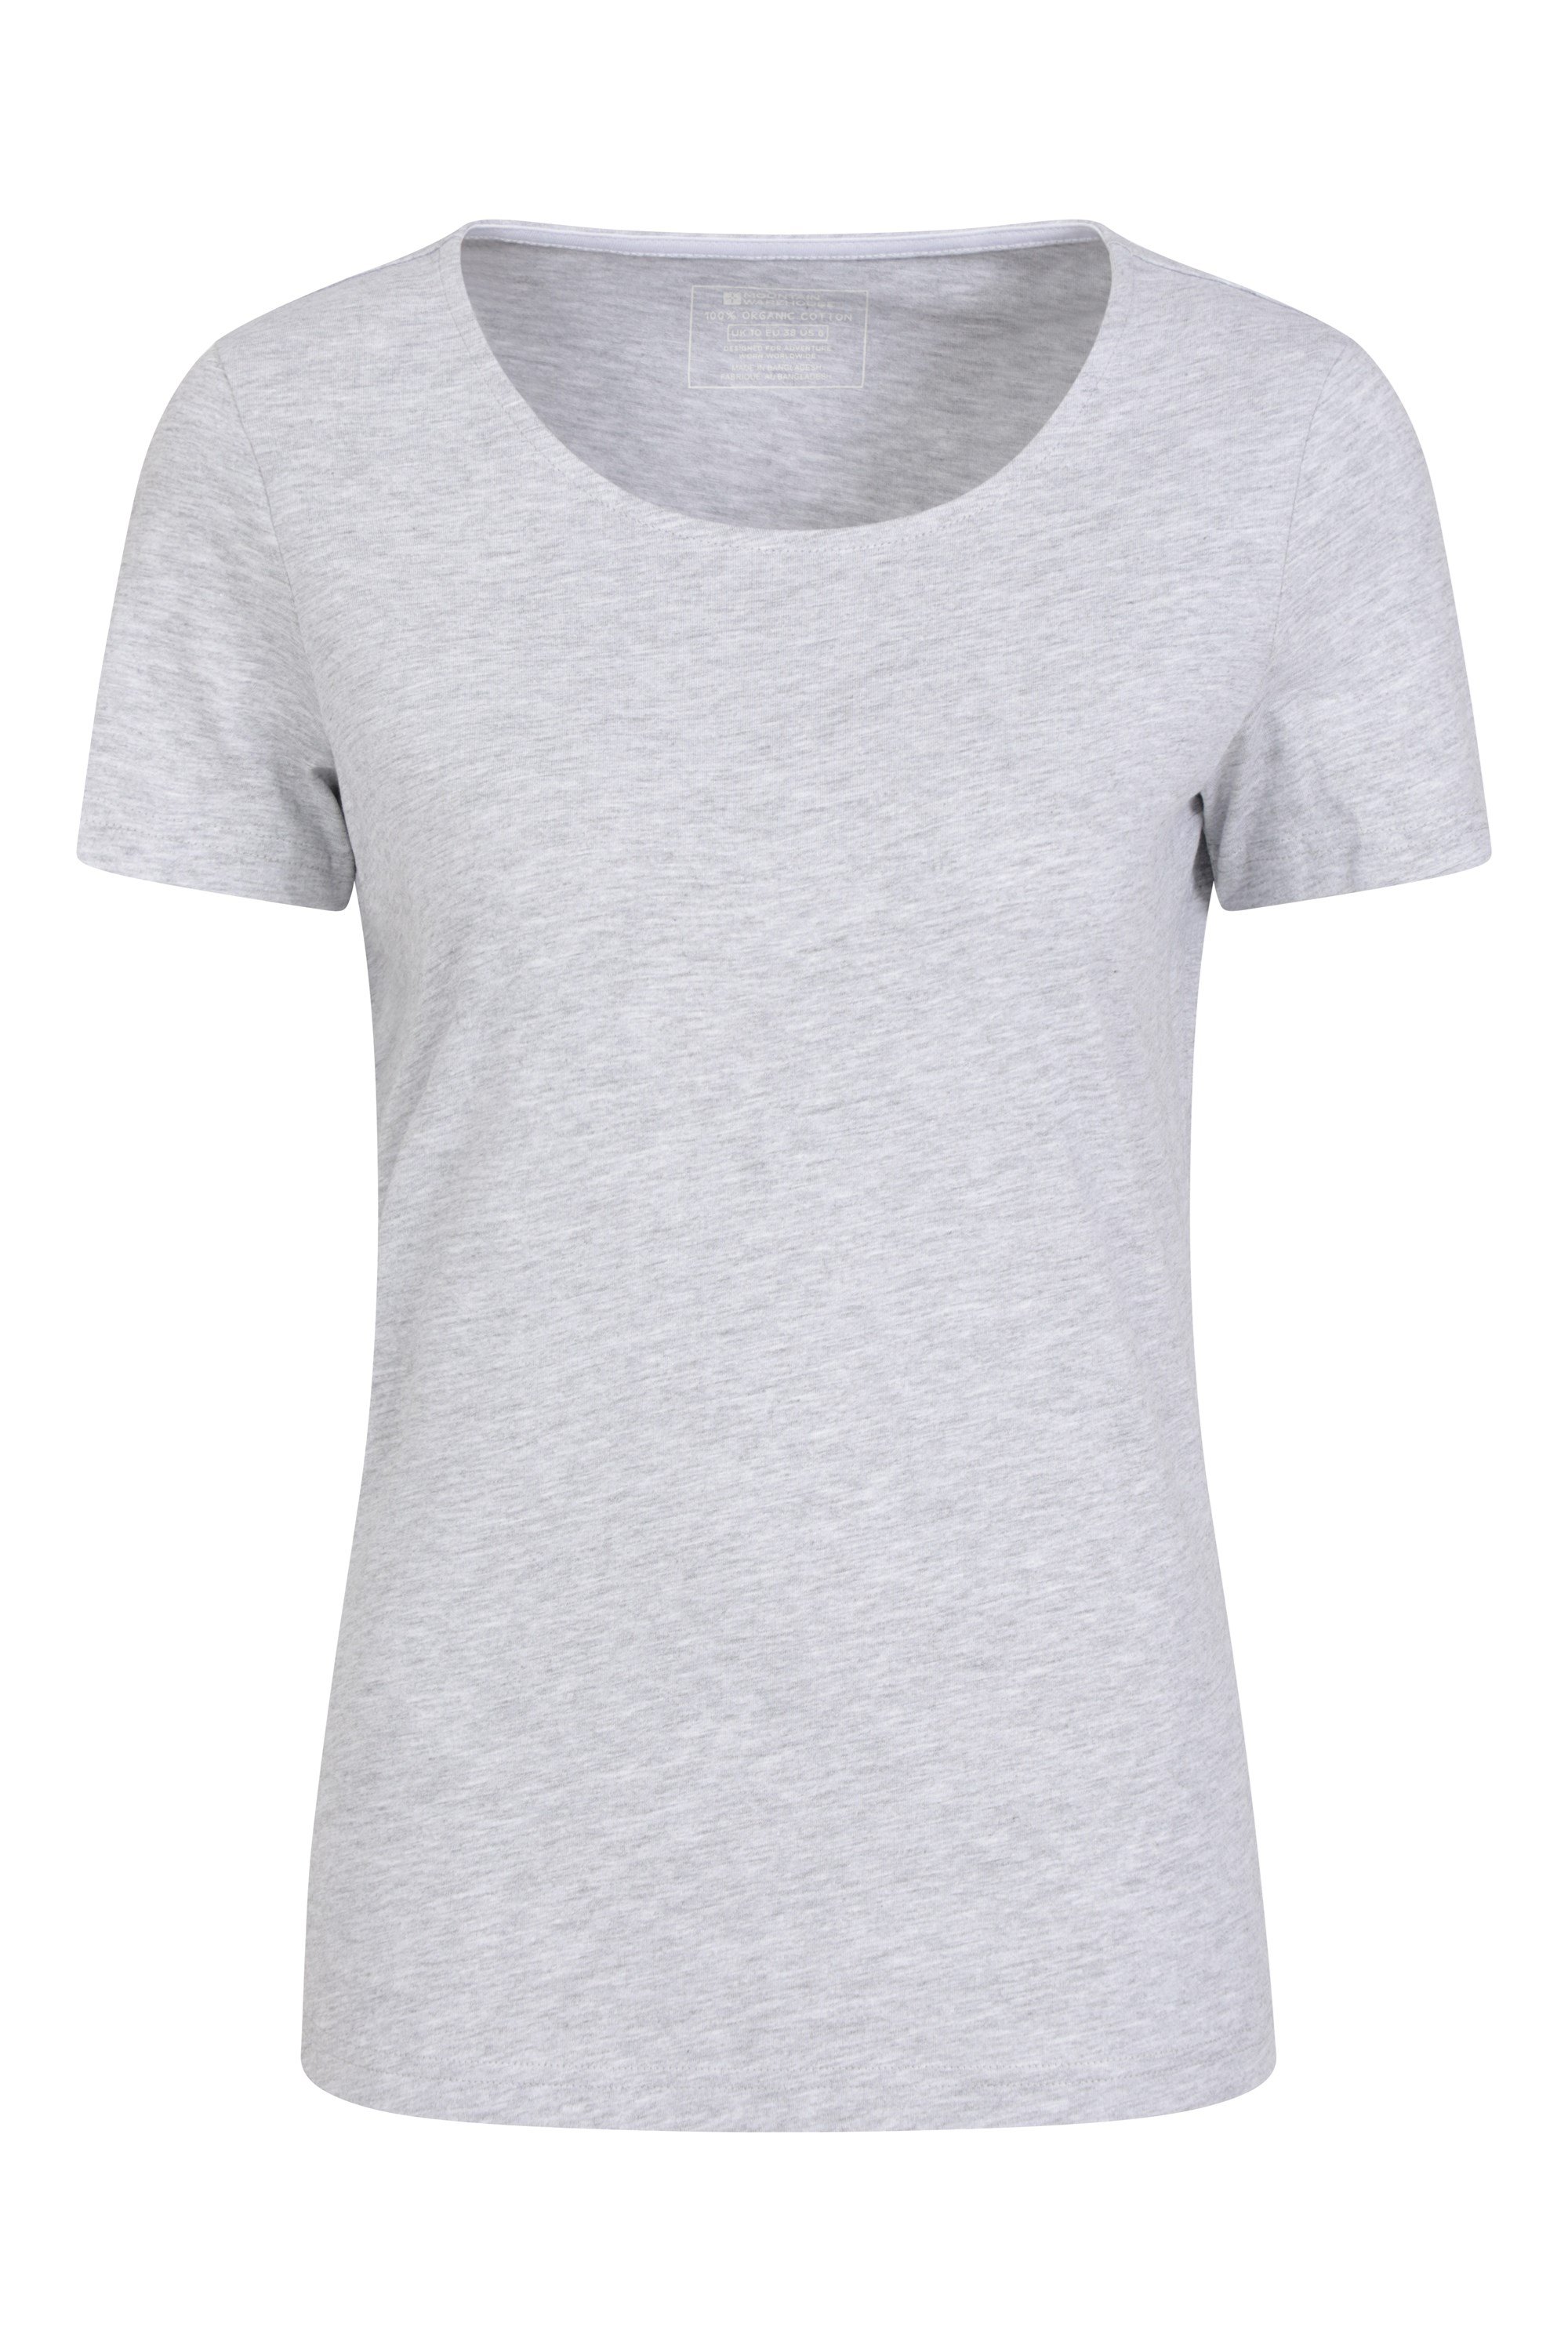 Eden Round Neck Womens Organic T-Shirt - Grey